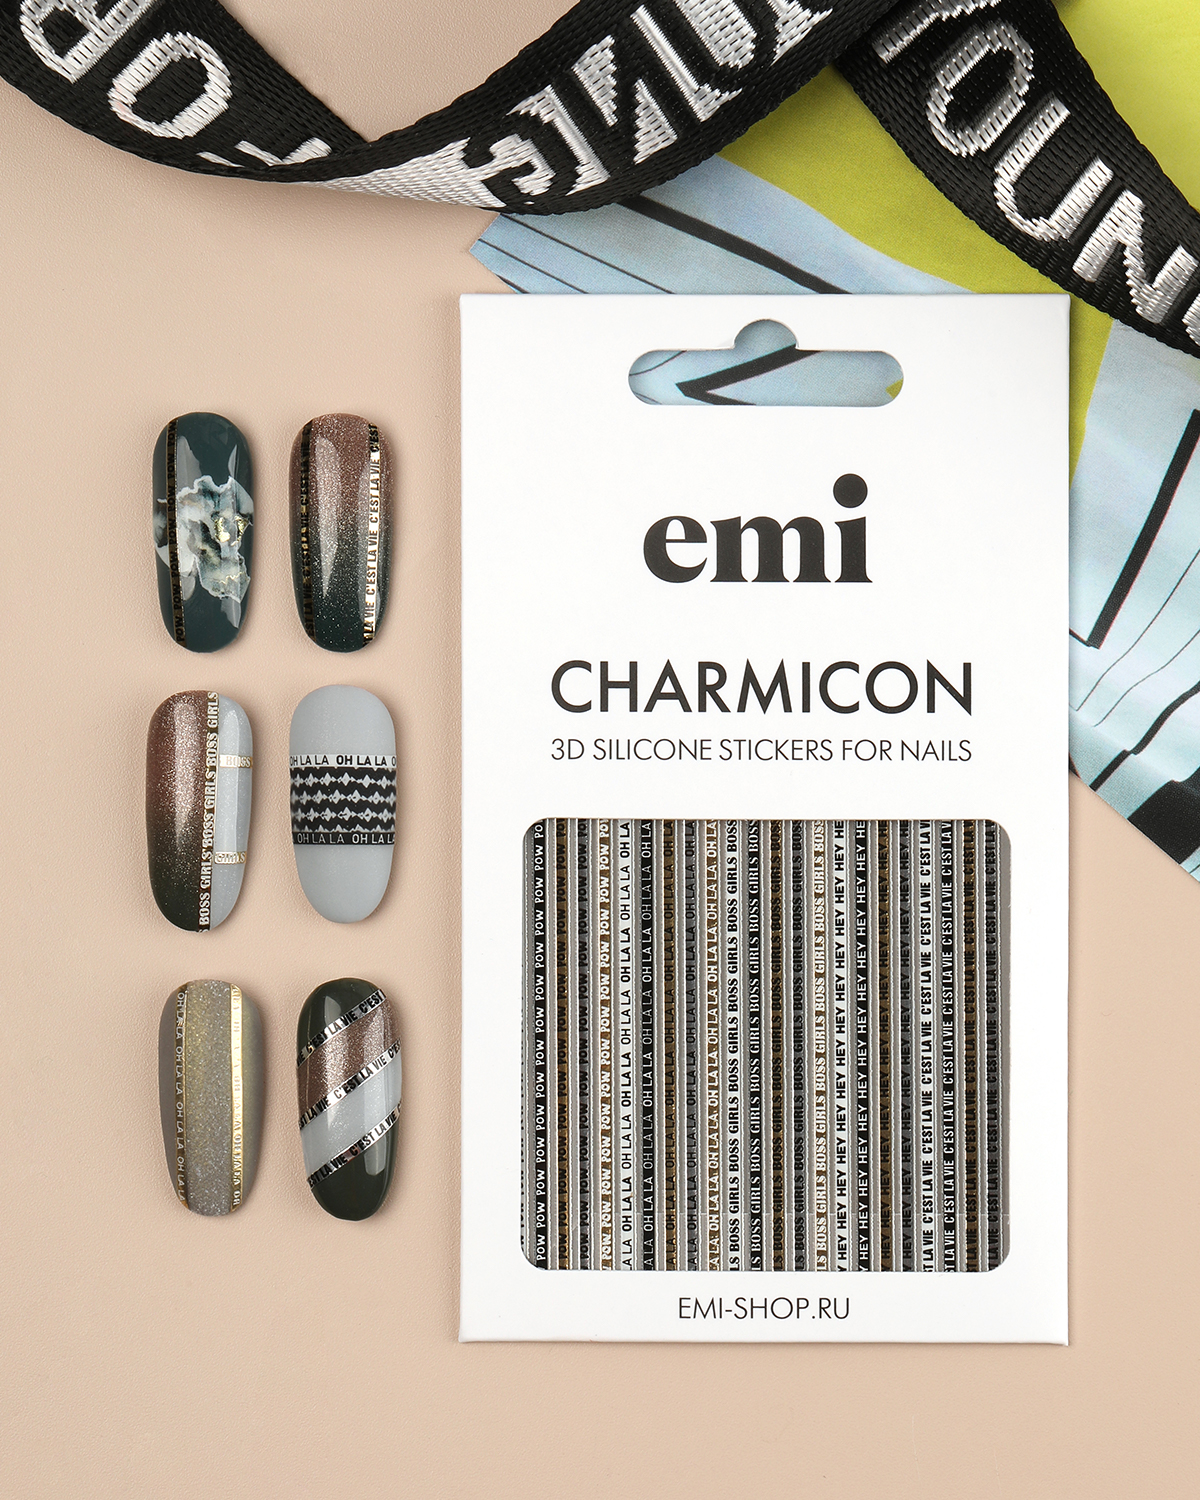 Объемные наклейки для дизайна ногтей EMi Charmicon 3D Silicone Stickers №244 Oh la la наклейки многоразовые объемные корги 2